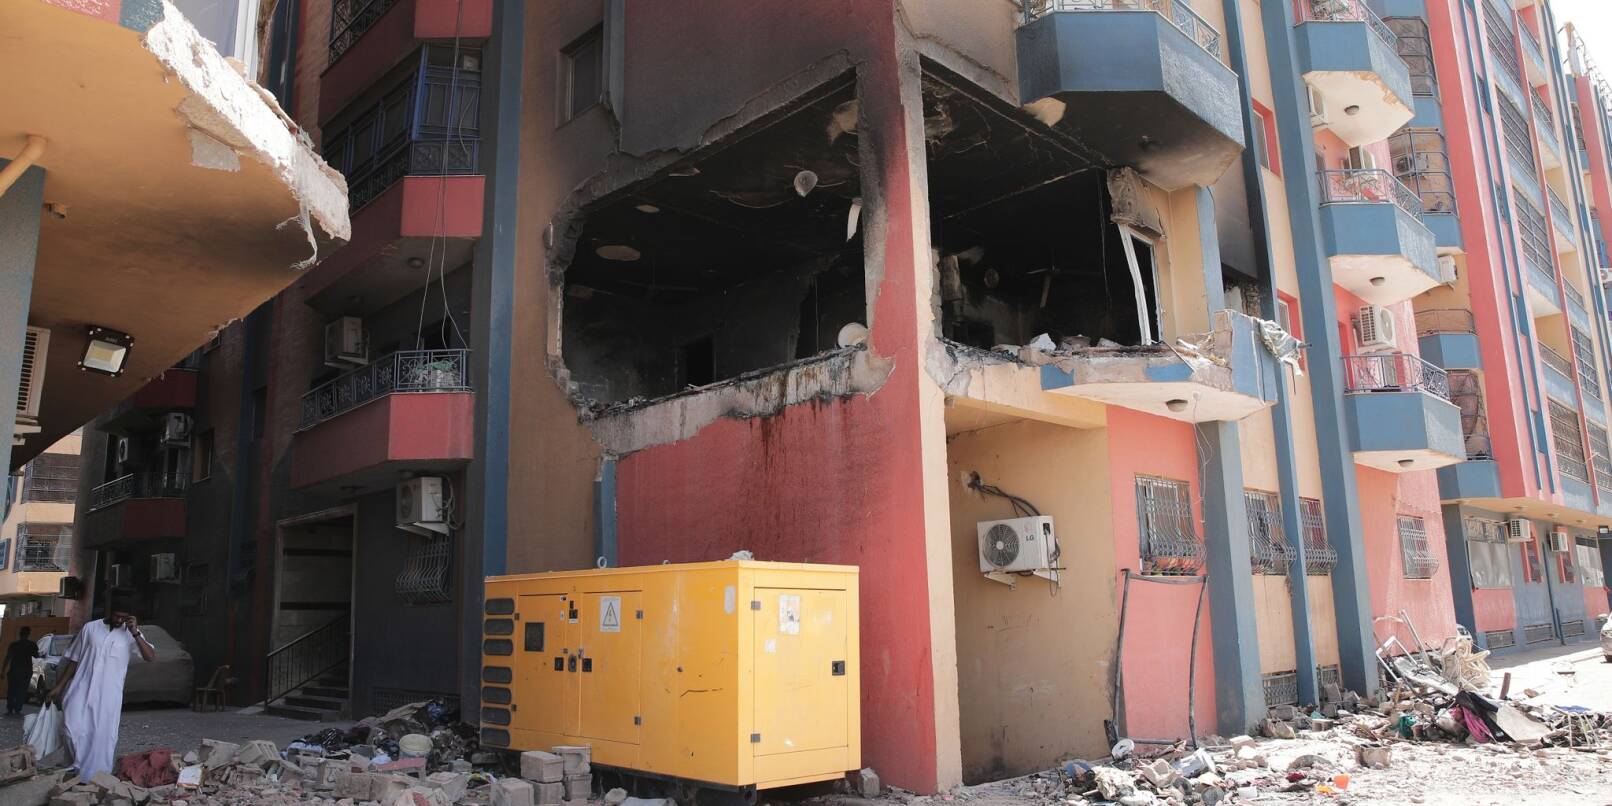 Ein beschädigtes Wohngebäude in Khartum. ist nach Kämpfen zu sehen. Es geht nach aktuellem Stand um die Rettung einer niedrigen dreistelligen Zahl deutscher Staatsbürger aus dem Sudan.